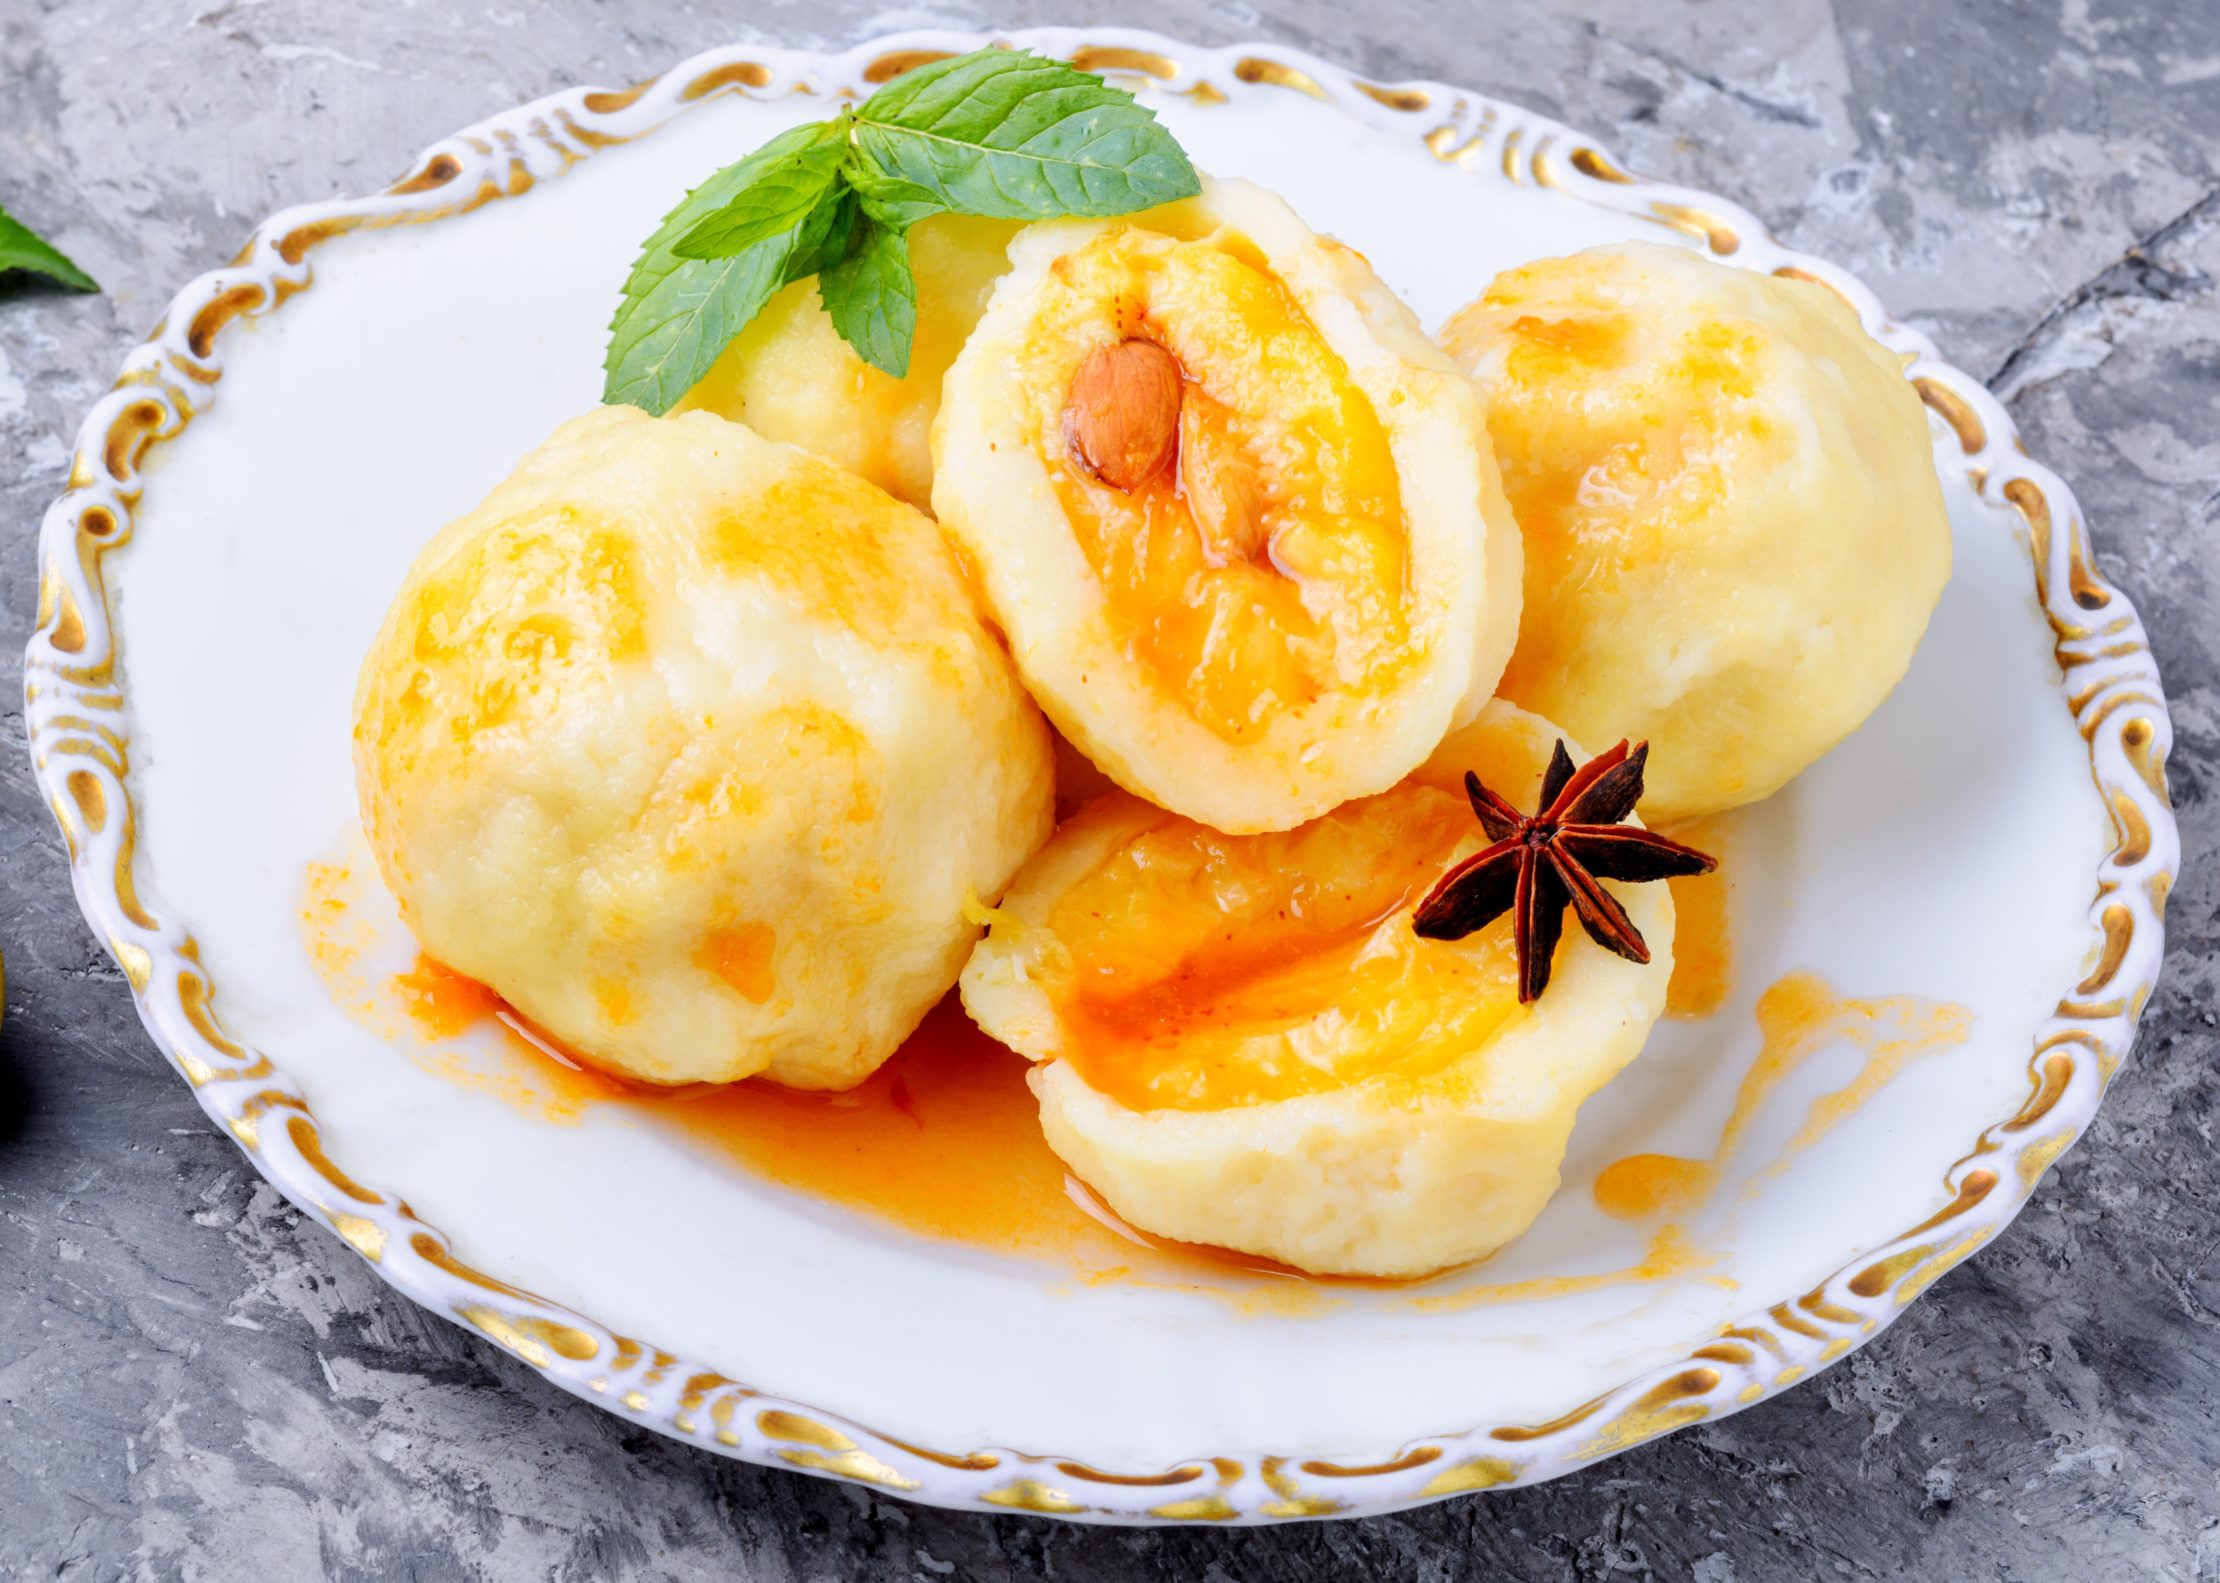 Los platos principales dulces son típicos en la cocina Checa como estos dumplings de albaricoque - knedliky